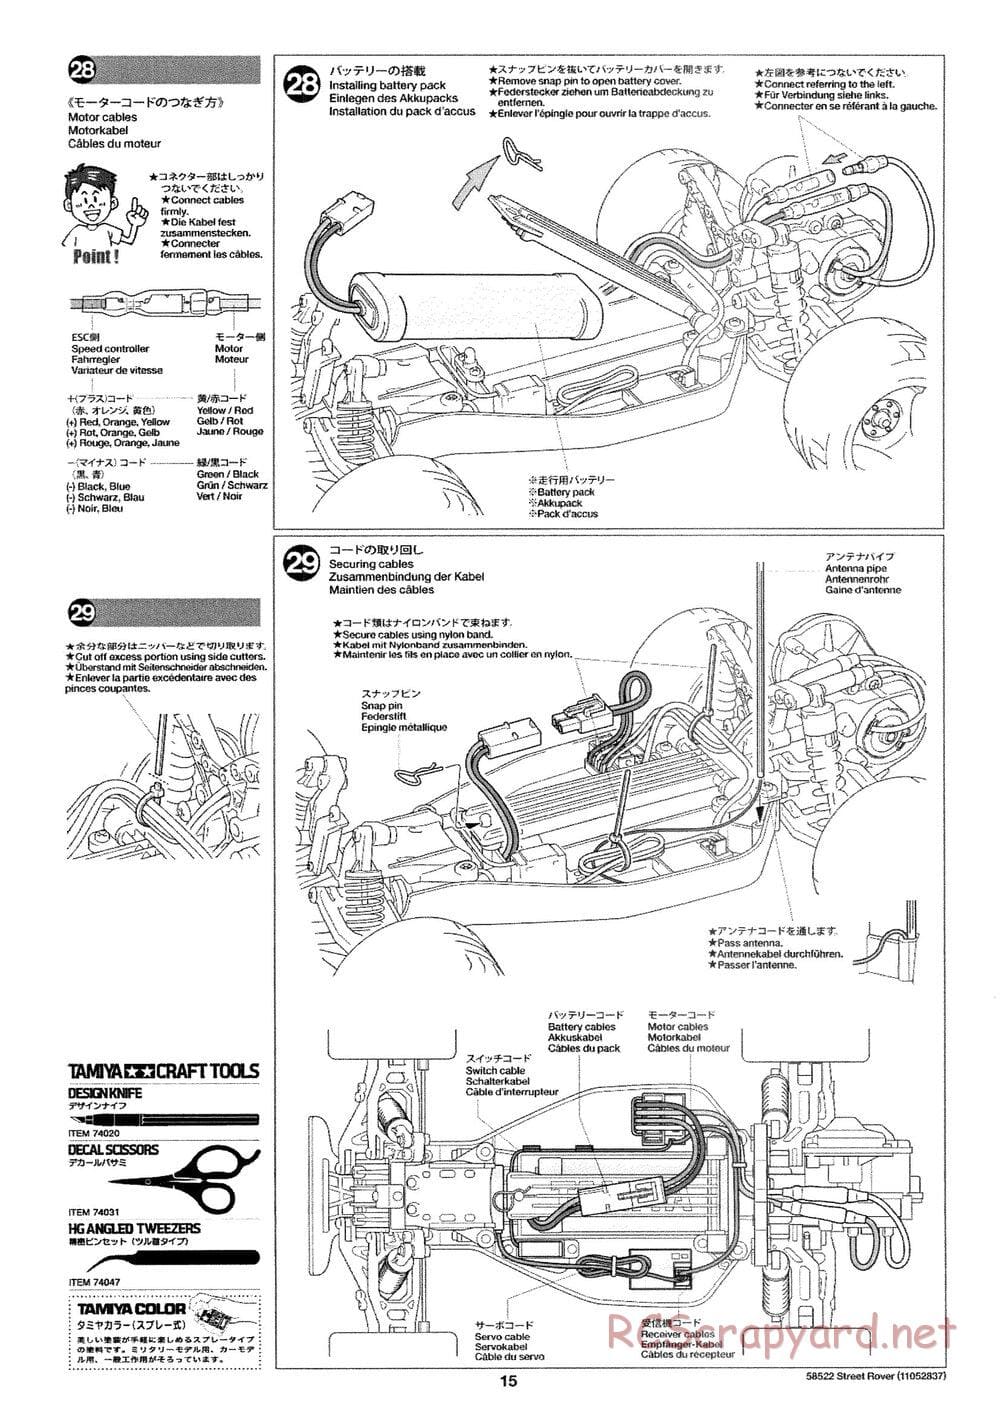 Tamiya - Street Rover Chassis - Manual - Page 16